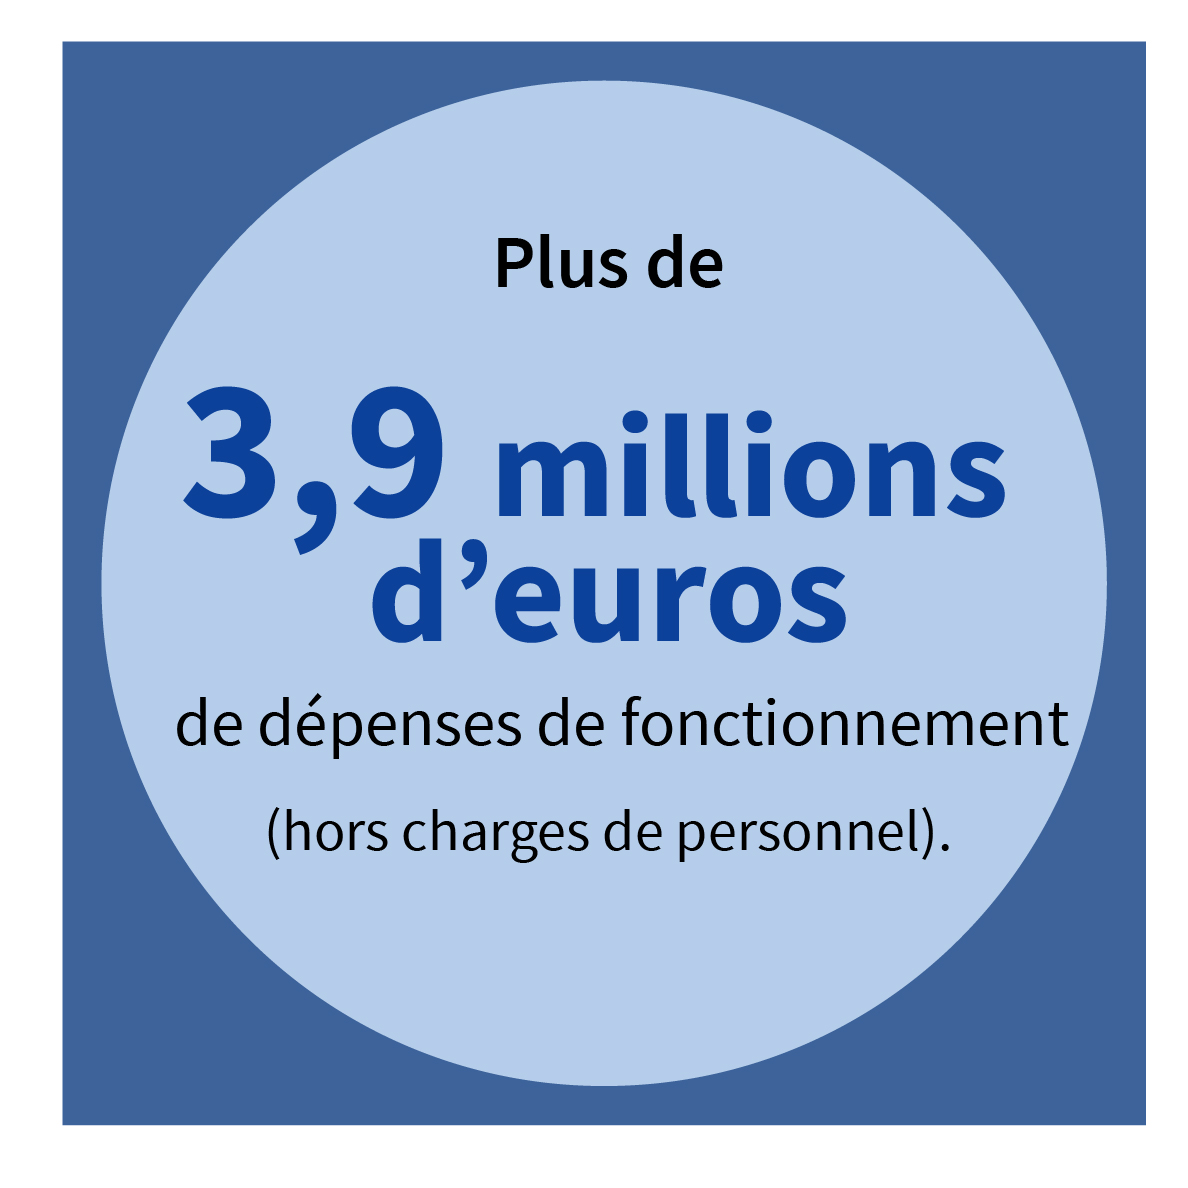 Plus de 3,9 millions d’euros de dépenses de fonctionnement (hors charges de personnel).